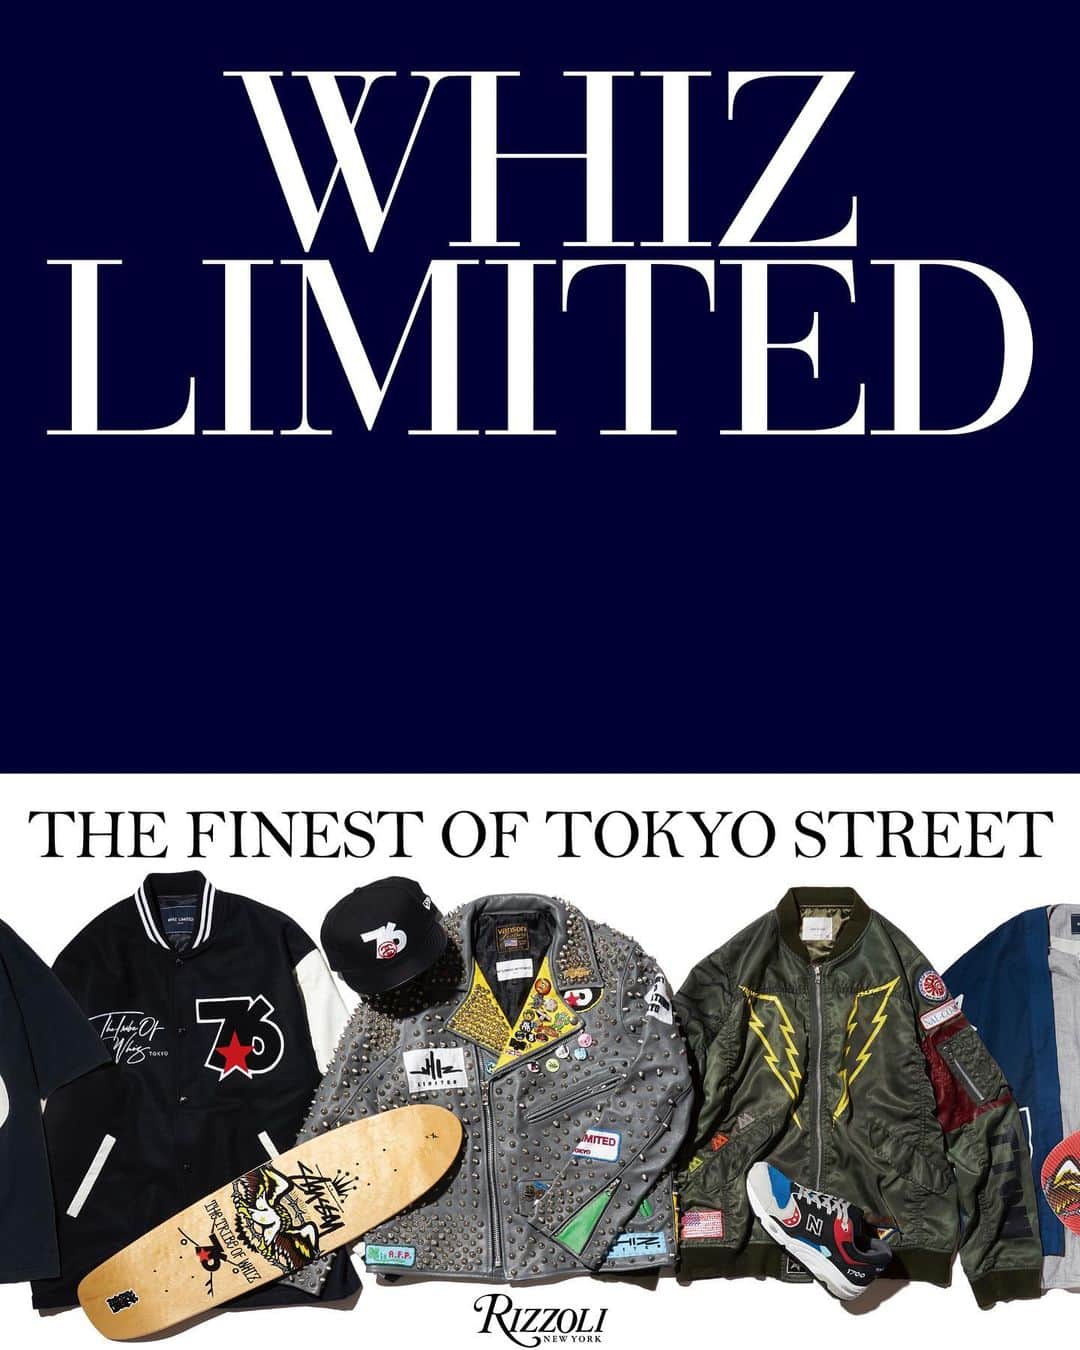 ウィズリミテッドのインスタグラム：「#Repost @whiz1976  ・・・ RIZZOLI NEWYORKからWHIZLIMITEDの20年をまとめた本がリリースされます。 過去20年のシーズンビジュアルや5回行ったランウェイショーの写真、WHIZLIMITED×mita sneakersのすべてのコラボレーションスニーカー、日本と海外の雑誌のアーカイブ、代表的なコラボレーションアイテムの写真などが256ページに収められています。 Rizzoliの公式発表だと今日4月5日発売。 本当は2020年のWHIZLIMITED20周年のタイミングでリリースしたかった20周年本でしたがコロナの影響もあり企画は中止。 先も見えない中でしたがMo'design溝口さんのおかげでRIZZOLIから出版することができることになりました。 2年予定が伸びたおかげで多くの20周年アイテムを掲載することができたし、RIZZOLIの流通で世界で販売されることになったし延期をポジティブに受け止めることができました。 日本でのリリースはもう少し先になるみたいですが多くの方に見て頂ければと思っています。 この本を読んで改めて多くの人に支えられてこの20年を歩んで来たんだなと振り返ることができました。 WHIZLIMITEDというブランドにとっても僕個人にとってもとても大切な一冊に仕上がりました。 この本の全てを作ってくれたMo'designチームの皆様、全ての文章を担当してくれた岸さん、そしてWHIZLIMITEDを支えてくれた関係者の皆様、本当にありがとうございました🙏  #Repost @whiz_limited  ・・・ WHIZLIMITED 『THE FINEST OF TOKYO STREET』  Art Director:Motoki Mizoguchi (mo'design inc.) @modesigninc  Designer:Ryu Goda&Junya Kishimoto (mo'design inc.) Assistant Designer:Genki Mizoguchi @mizo_genki  Photographer:Atsushi Fuseya @bobtokyo  Contributor:Nobukazu Kishi @nobukazu_kishiii   Publish Date: April 05, 2022 Format: Hardcover Publisher: Rizzoli @rizzolibooks  Trim Size: 8-3/4 x 11 Pages: 256 US Price: $55.00 CDN Price: $75.00 ISBN: 978-0-8478-7134-6  #whiz #whizlimited #rizzoli #rizzolibooks #thefinestoftokyostreet #modesign」